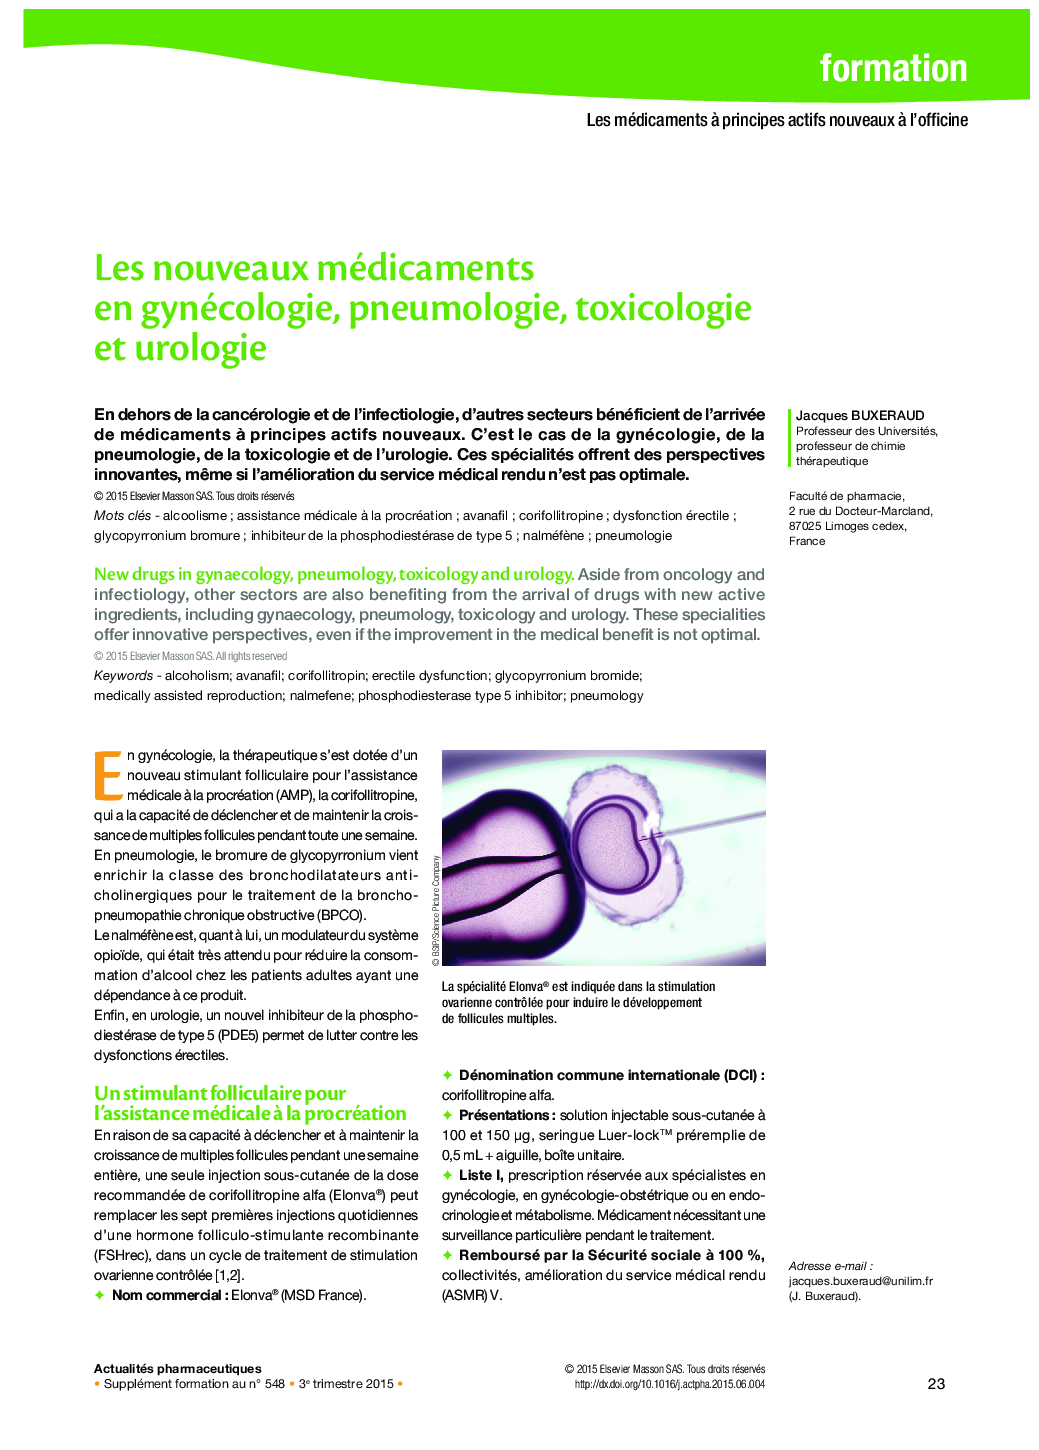 Les nouveaux médicaments en gynécologie, pneumologie, toxicologie et urologie